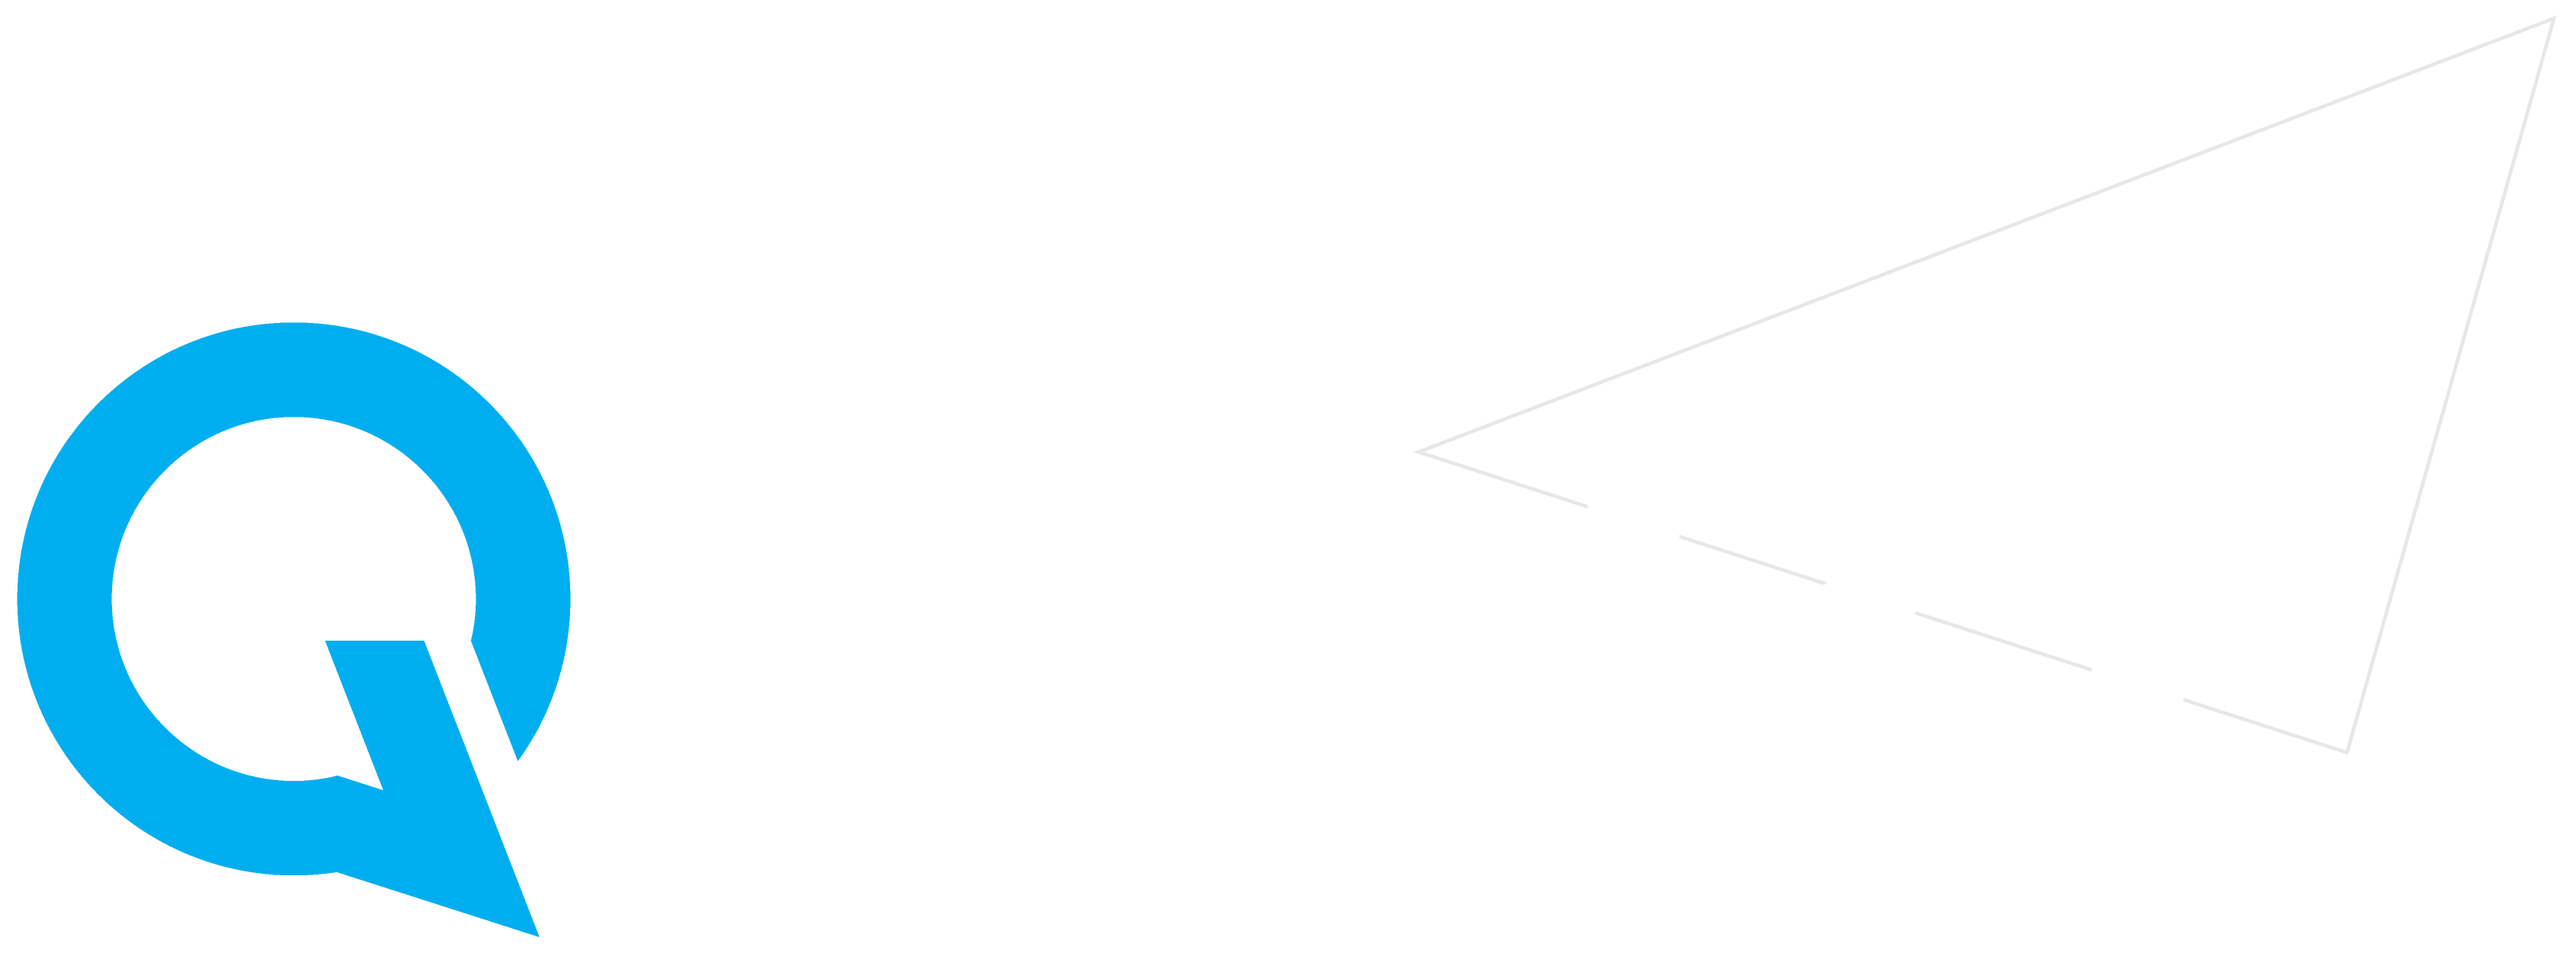 Q Mart Logo - Qmart | SA's Leading distributor